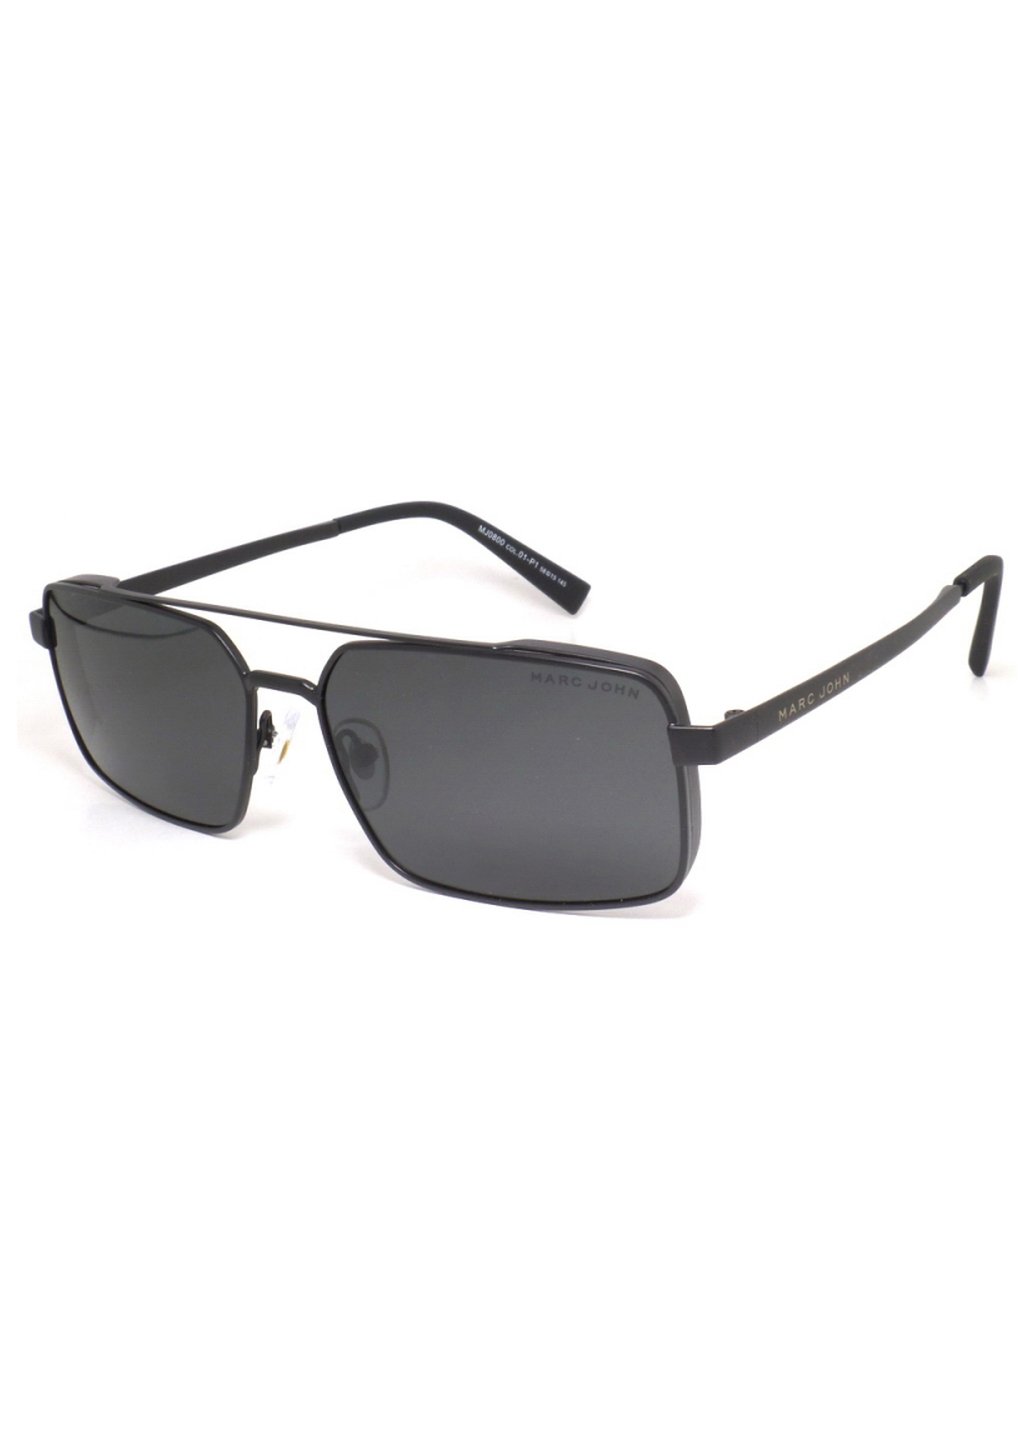 Купить Мужские солнцезащитные очки Marc John с поляризацией MJ0800 190010 - Черный в интернет-магазине